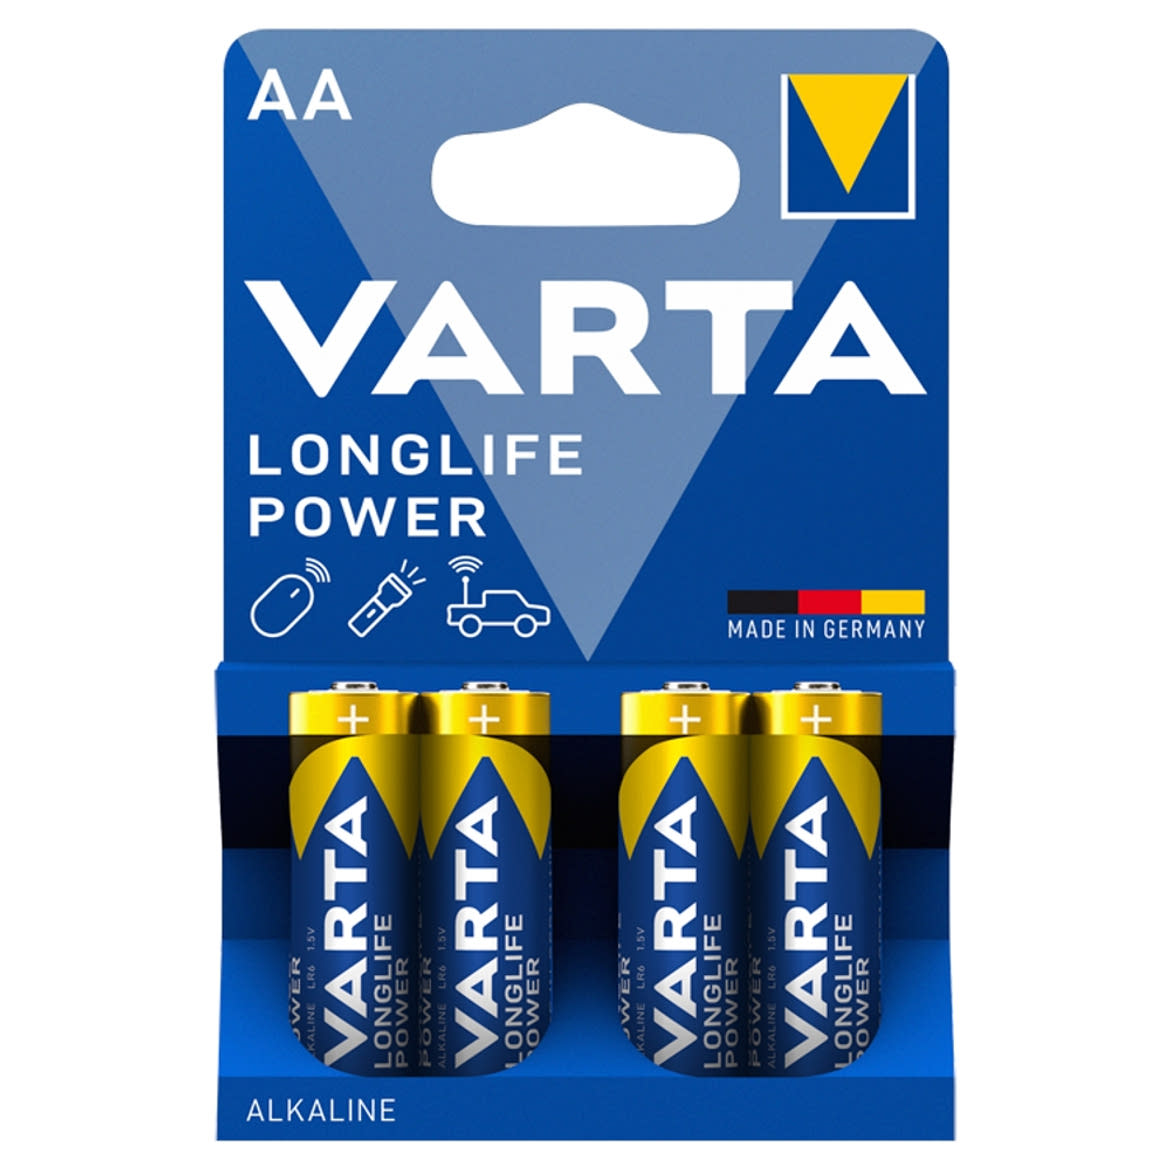 Varta Longlife Power AA LR6 1,5 V nagy teljesítményű alkáli elem